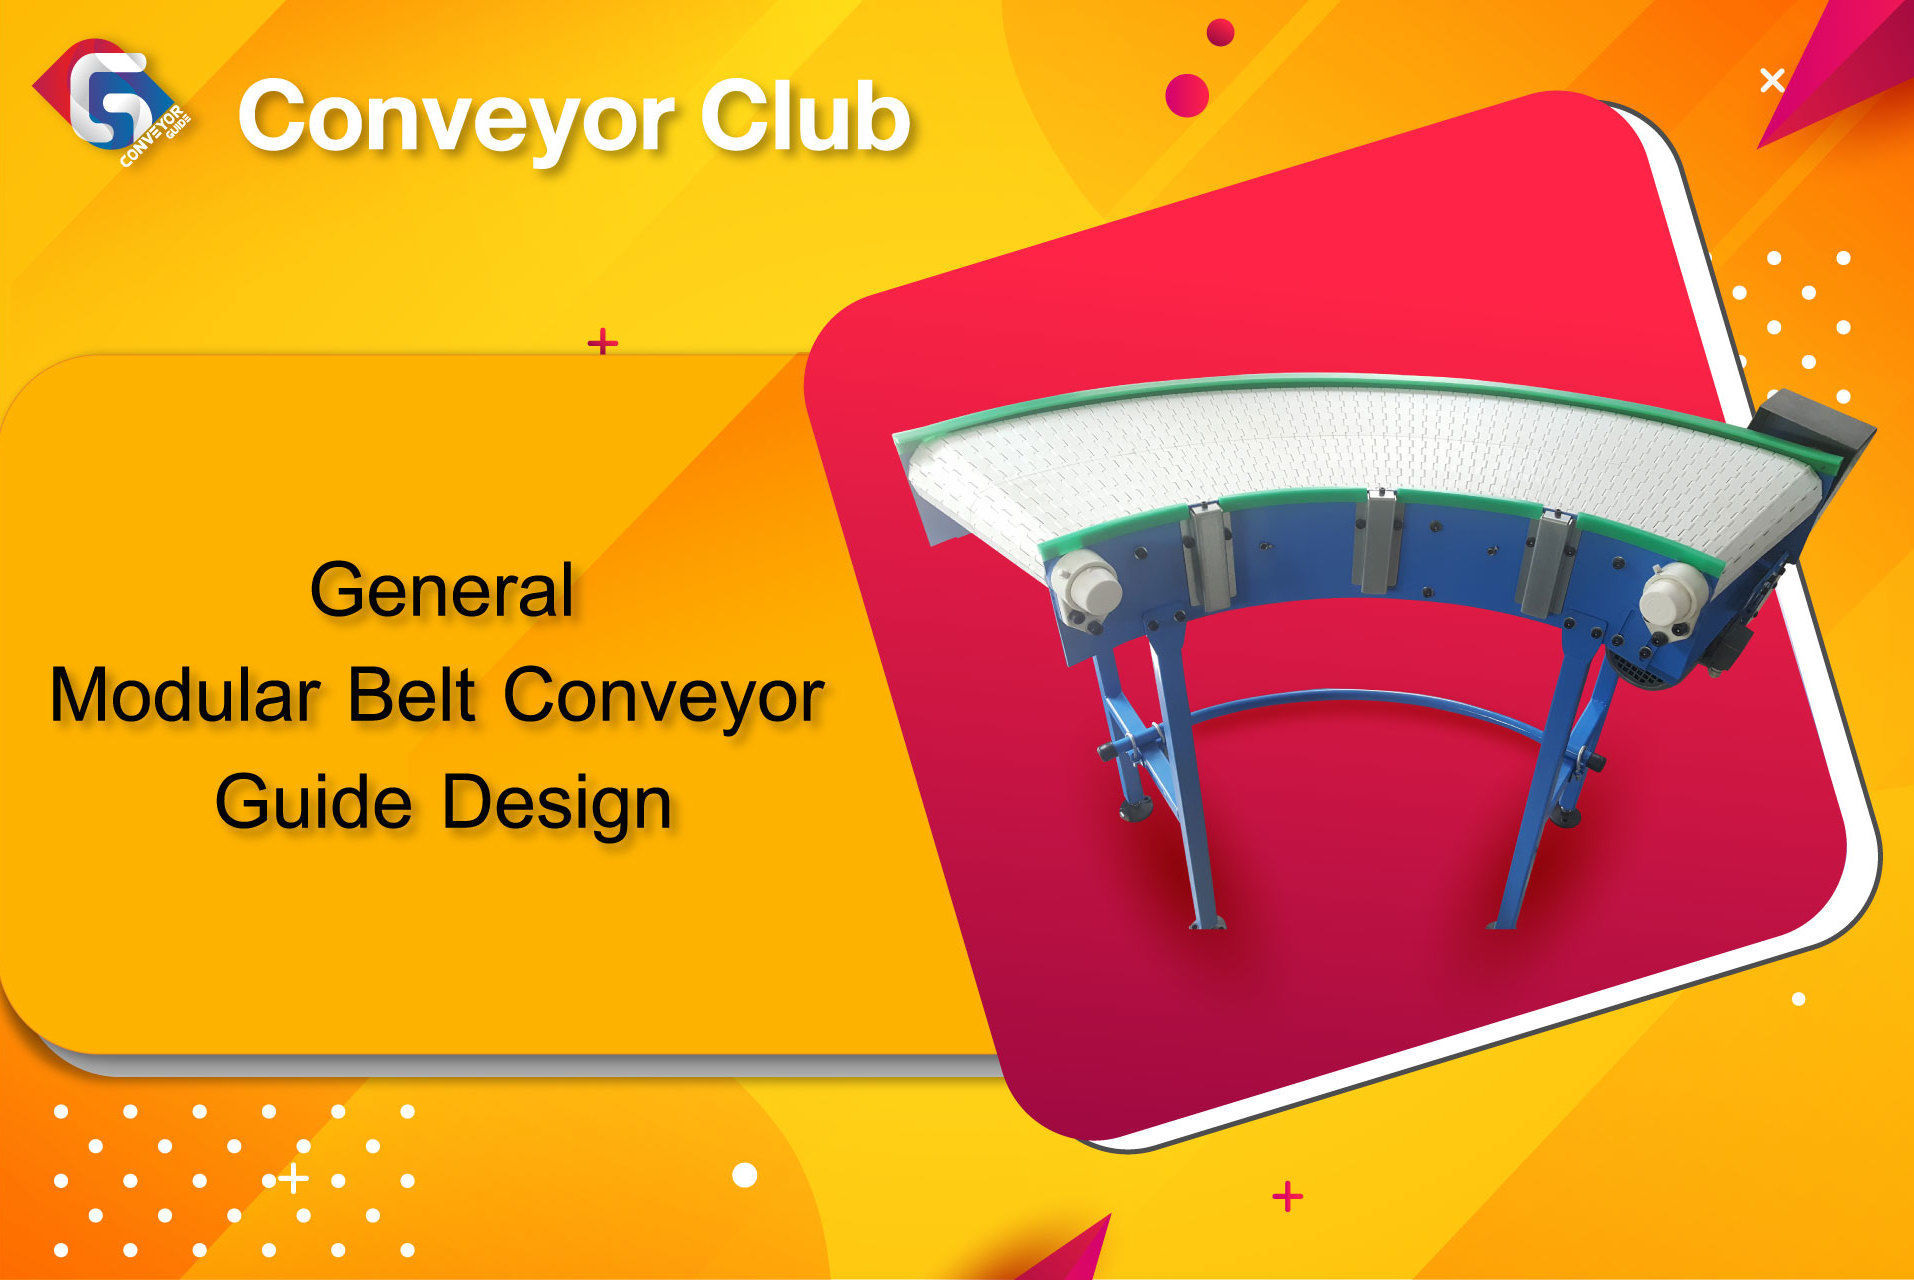 วิธีทำงานของ Conveyor ที่มีหลักการเป็นเหตุเป็นผล เช่น การวาง layout การเลือกขนาดของมอเตอร์และการคำนึงถึงสิ่งแวดล้อมต่างๆที่สายพานทำงานมีความสำคัญมาก 